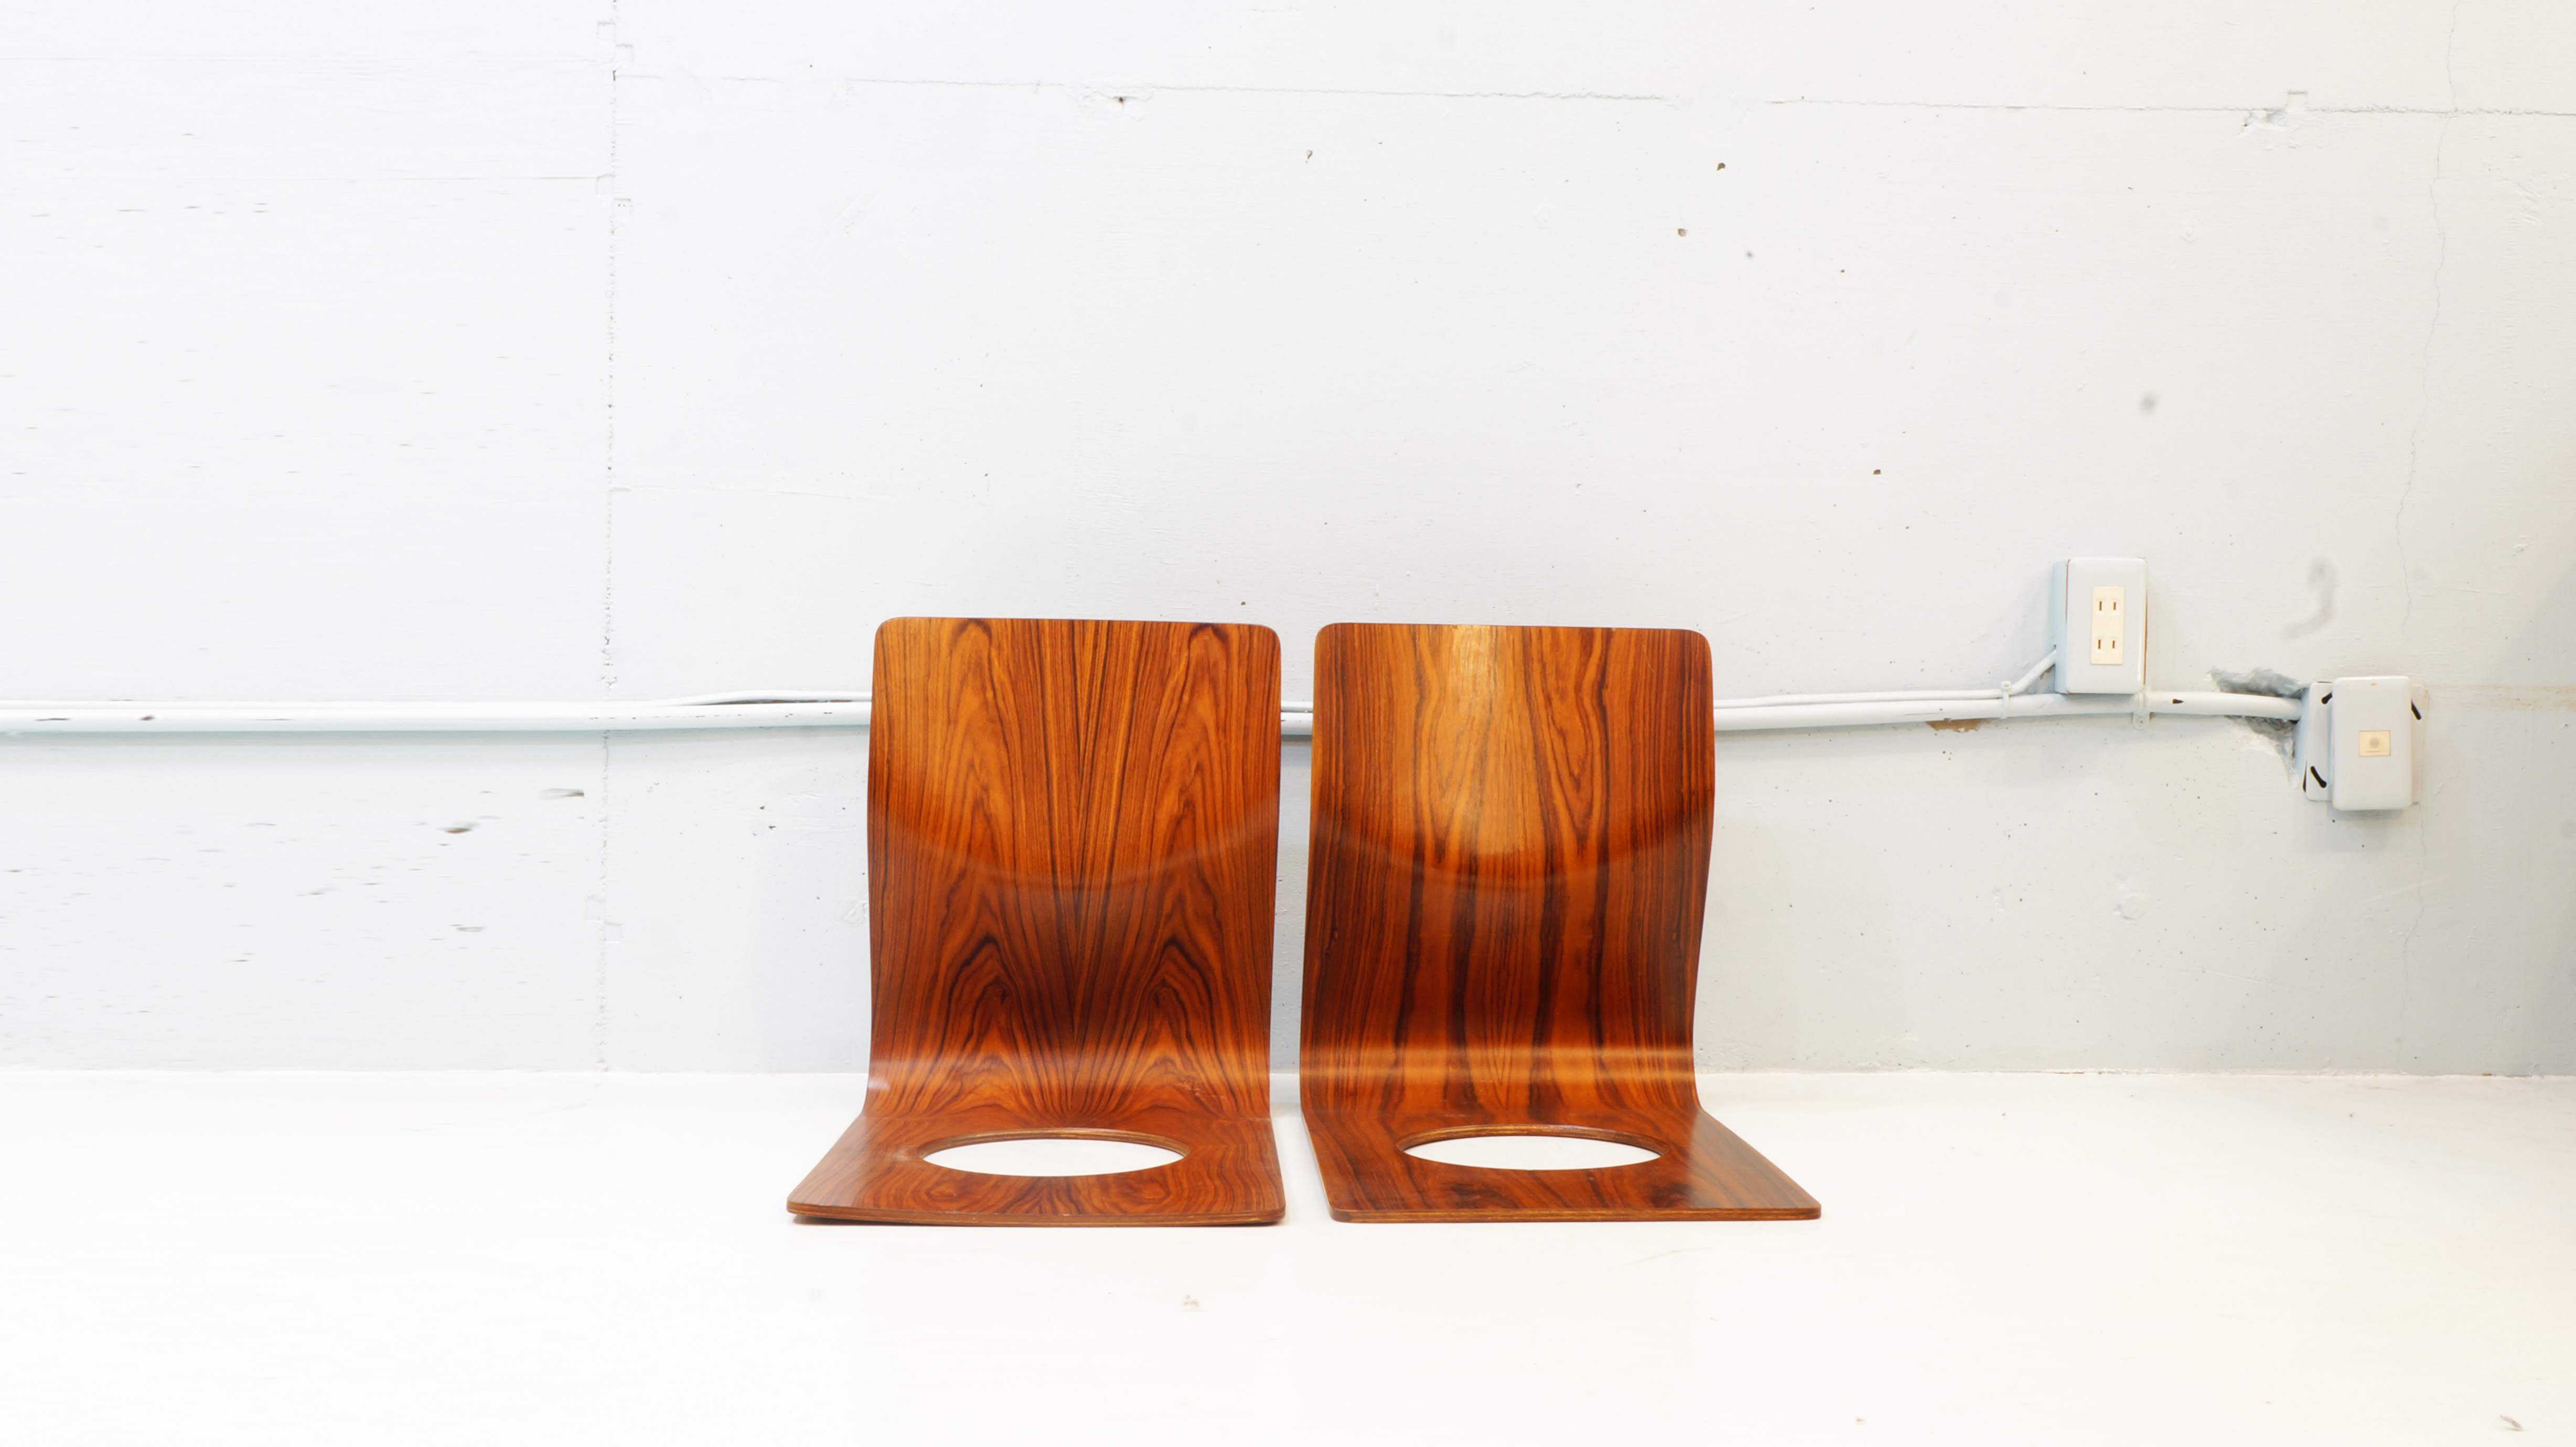 日本でいち早く成形合板を実用化させ数々のロングセラーを生み出してきた日本が誇る家具メーカー　この技術の可能性を認めた才能溢れるデザイナーや建築家たちは数多くいます。その中の一人がこちらの座椅子のデザインを手がけた日本人デザイナー　藤森健次　です。1911年10月1日生まれ　1954～55年、フィンランドの国立ユヴァスキラ美術大学のインダストリアル・デザイン科と室内建築インテリアデザイン科に留学。フィンランドならではの積層材を使用した家具がイルマリ・タピオヴァラによって数多くデザインされ、藤森さんはその影響を受け 帰国後スカンジナビアで学んだ機能的で無駄な要素を排し、素材の持ち味を活かすデザインとして1963年に生れたのが 　座イス　です。こちらの座椅子は、背もたれと座面を成形合板一枚で三次元曲面で加工された極めてシンプルな構造。材の持つ適度な撓りが身体にフィットし圧迫感を和らげた心地良い座り心地を実現、僅か1.7kgと女性でも手軽に扱える重量で末永くご使用頂ける丈夫な造りとなっております。座面に空いた穴は、座布団等を置いた際に畳や絨毯との摩擦を生み出し、ズレを防ぐと共に軽量化と変形防止、且つ持ち運びが容易なフォルムとなっており、積み重ねも可能。また、フィラデルフィア美術館のパーマネントコレクションにも収蔵されております。販売から半世紀も続くロングセラーの商品です。お探しだった方は、是非この機会にいかがでしょうか。～【東京都杉並区阿佐ヶ谷北アンティークショップ 古一/ZACK高円寺店】　古一では出張無料買取も行っております。杉並区周辺はもちろん、世田谷区・目黒区・武蔵野市・新宿区等の東京近郊のお見積もりも！ビンテージ家具・インテリア雑貨・ランプ・USED品・ リサイクルなら古一へ～